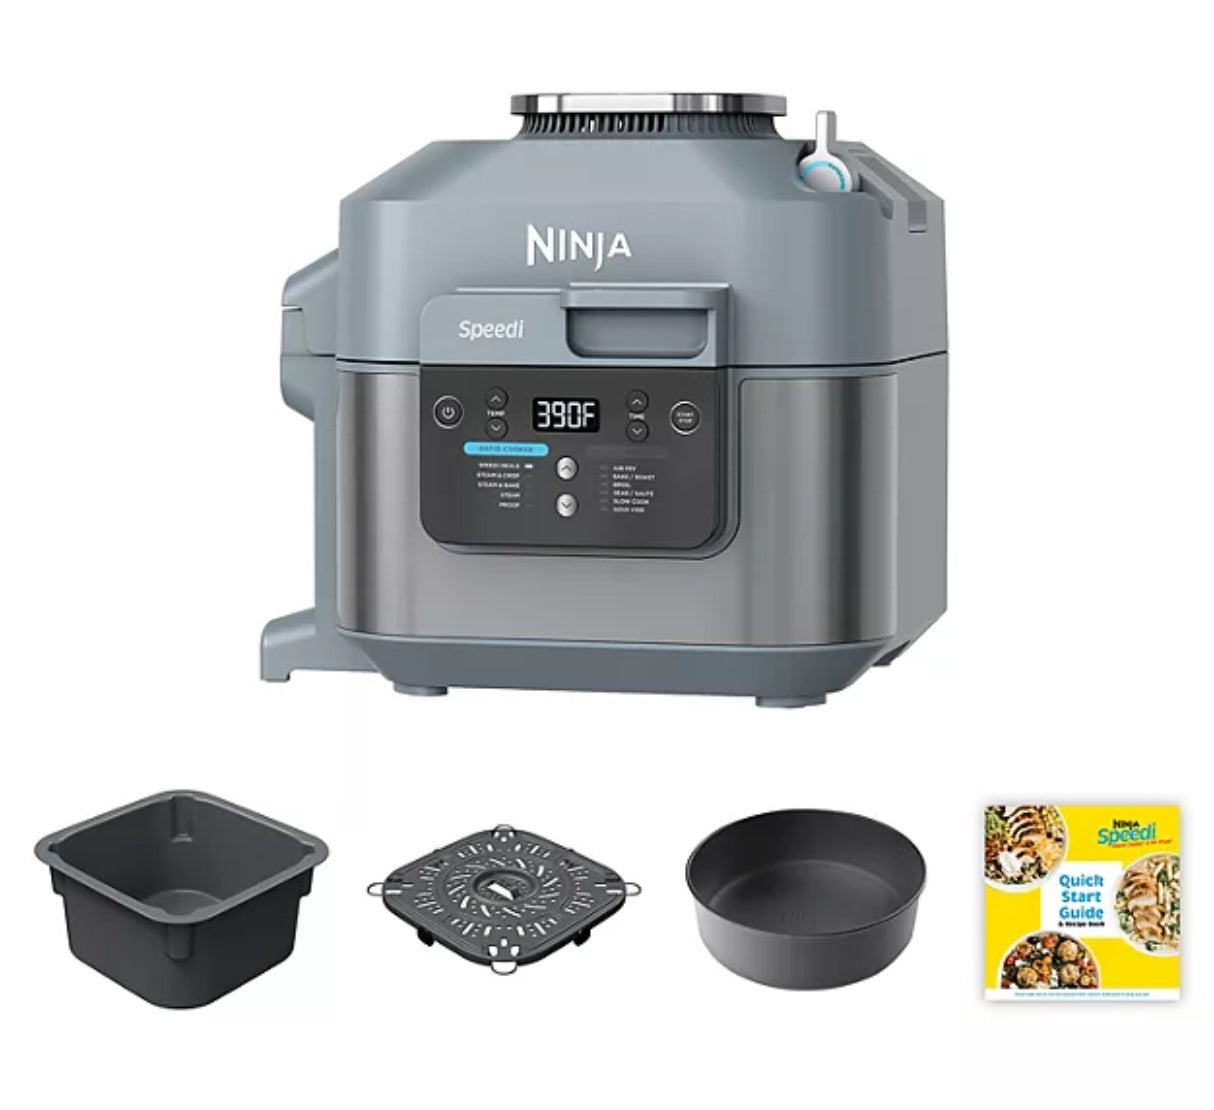 Ninja speedi rapid cooker and air fryer launch